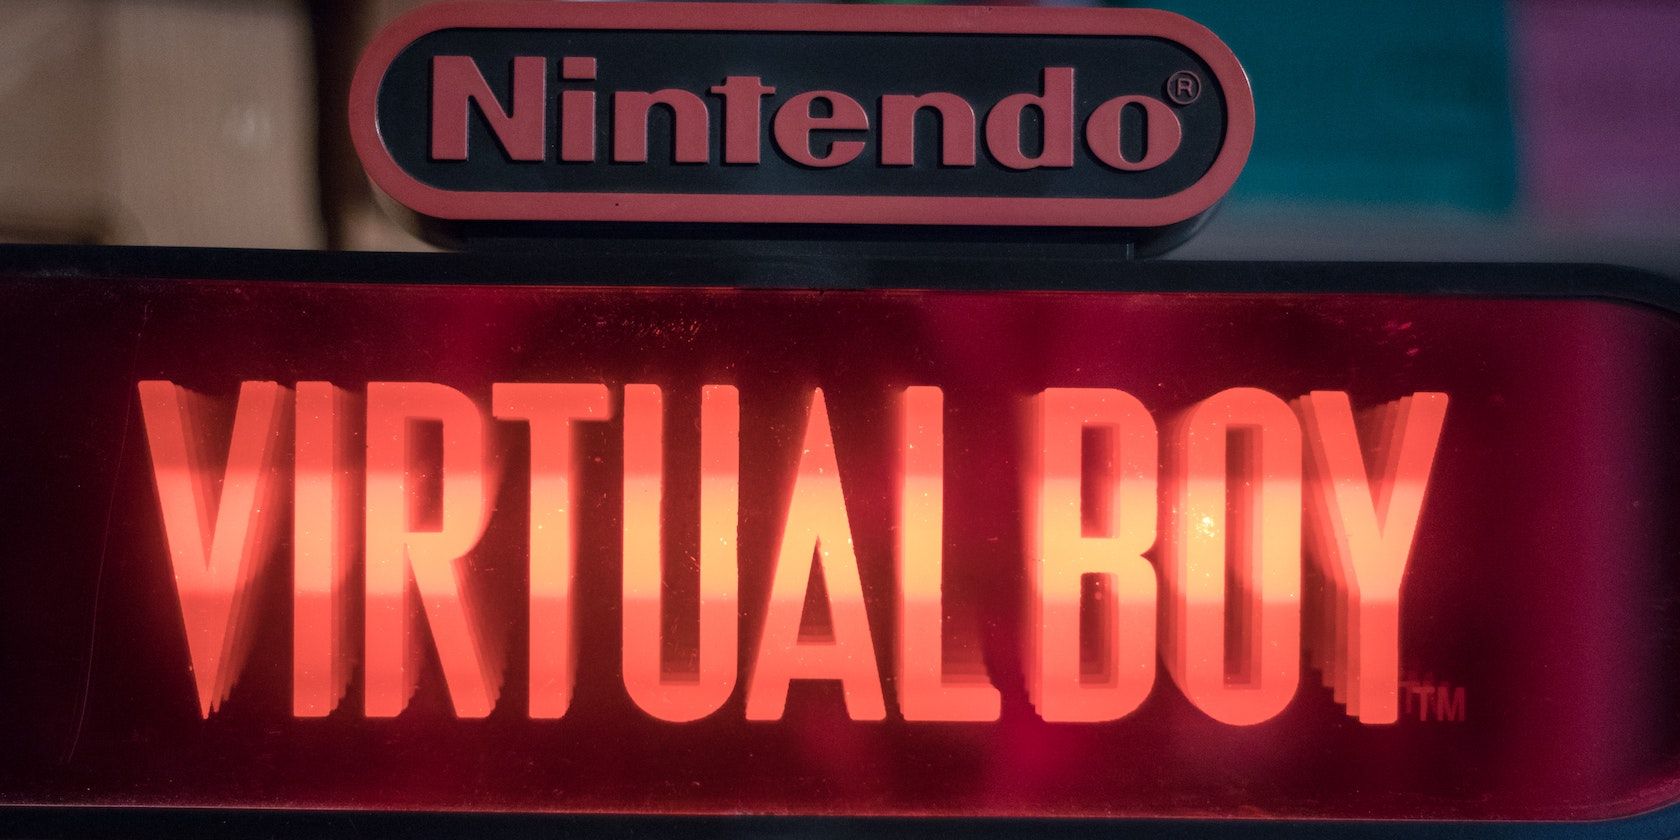 A sign for the Nintendo Virtual Boy